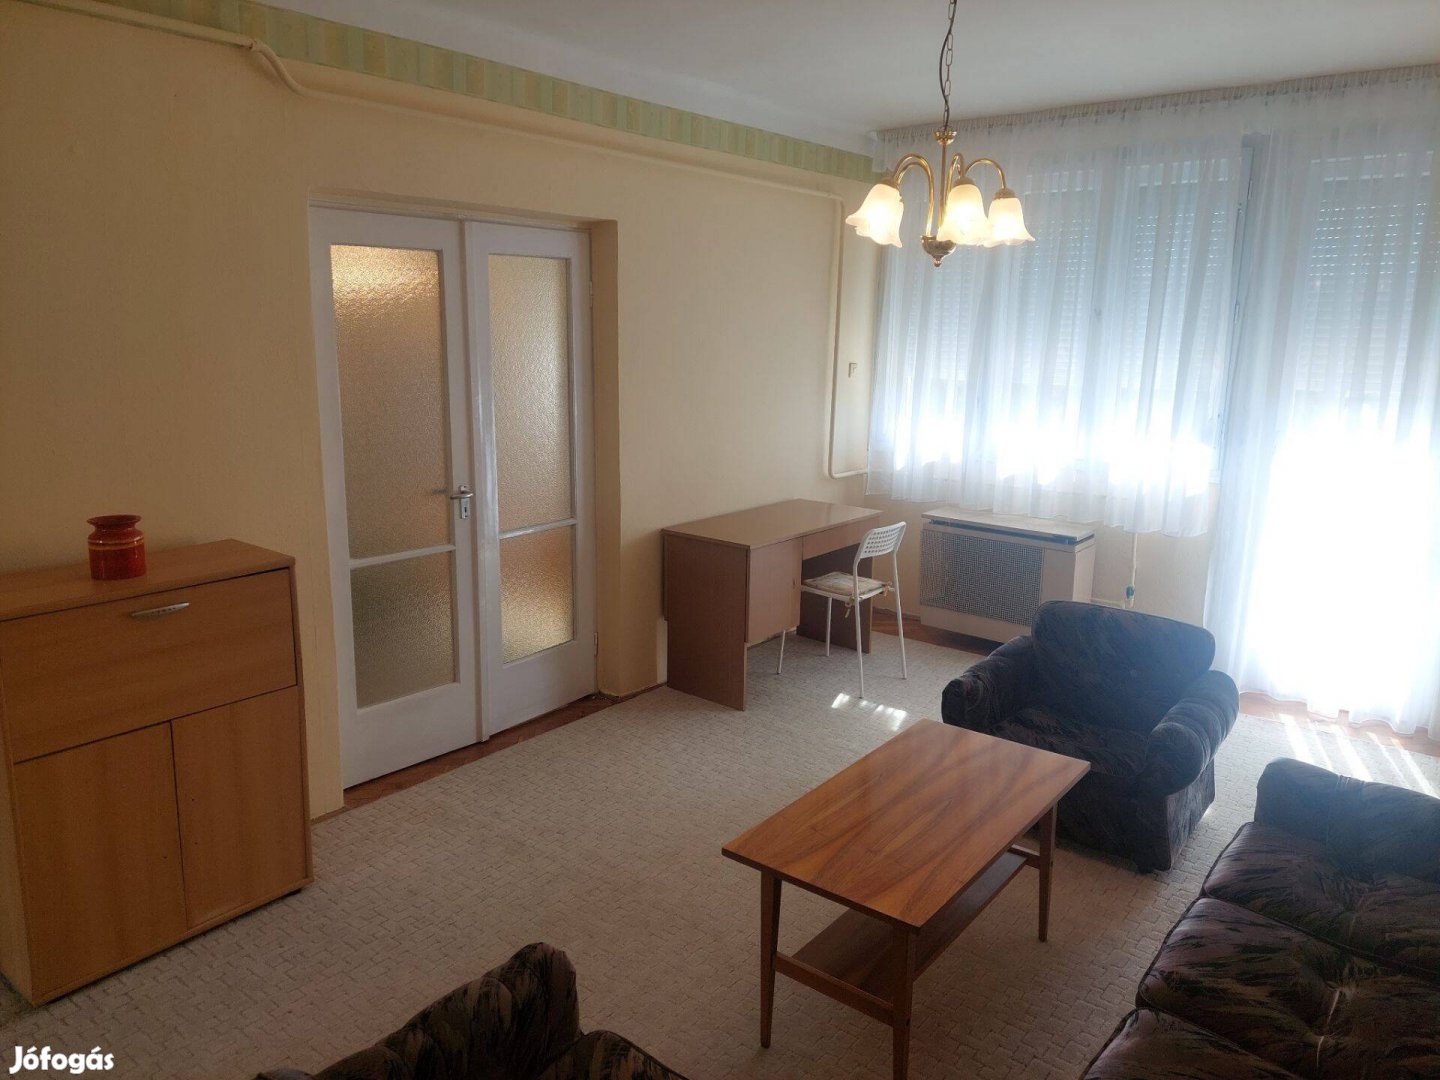 Albérlet Kaposvár belvárosában! 2 szoba, erkélyes, gázfűtéses lakás